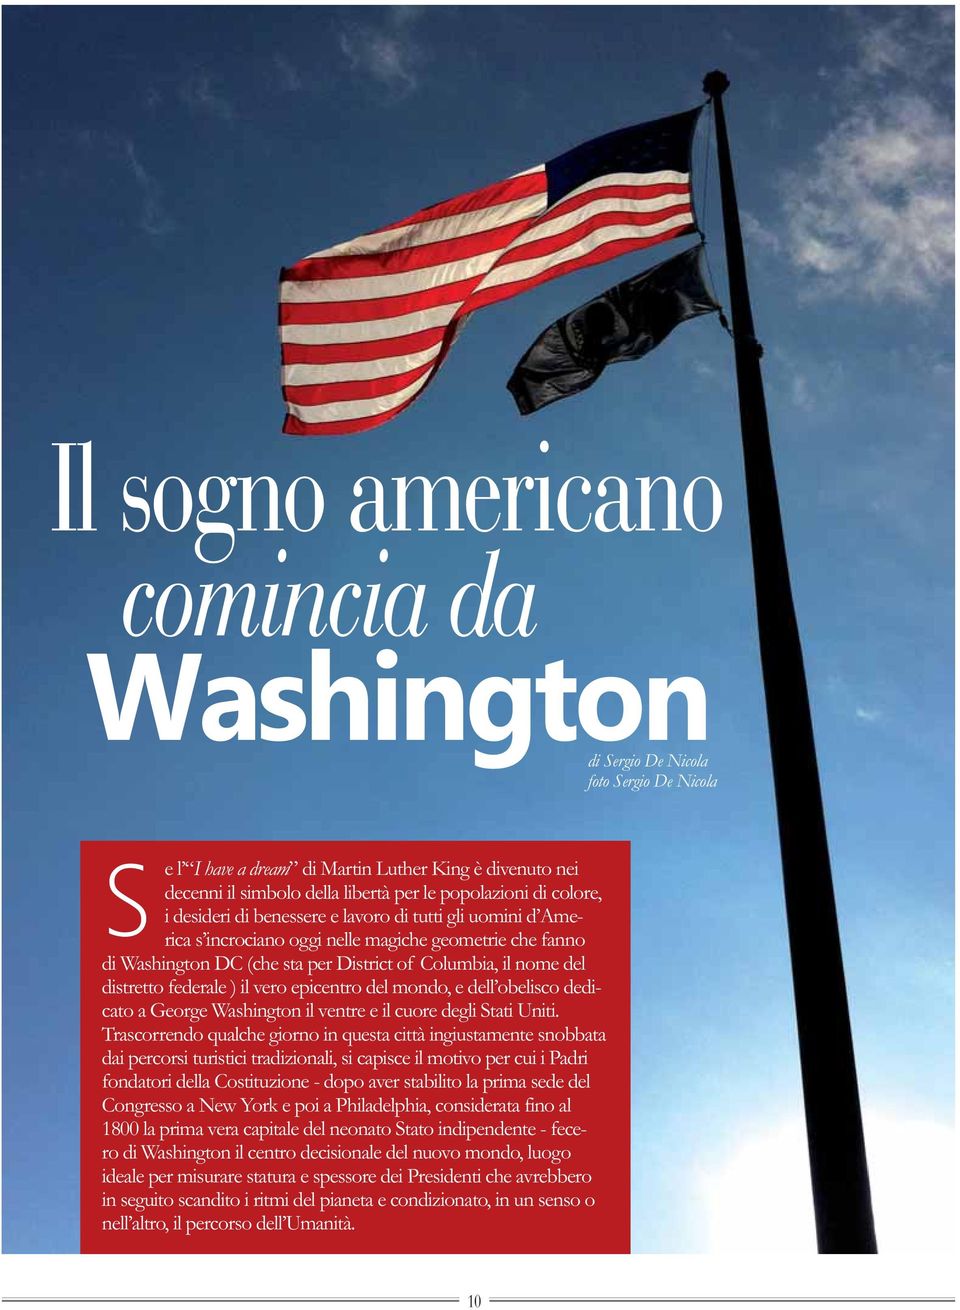 federale ) il vero epicentro del mondo, e dell obelisco dedicato a George Washington il ventre e il cuore degli Stati Uniti.